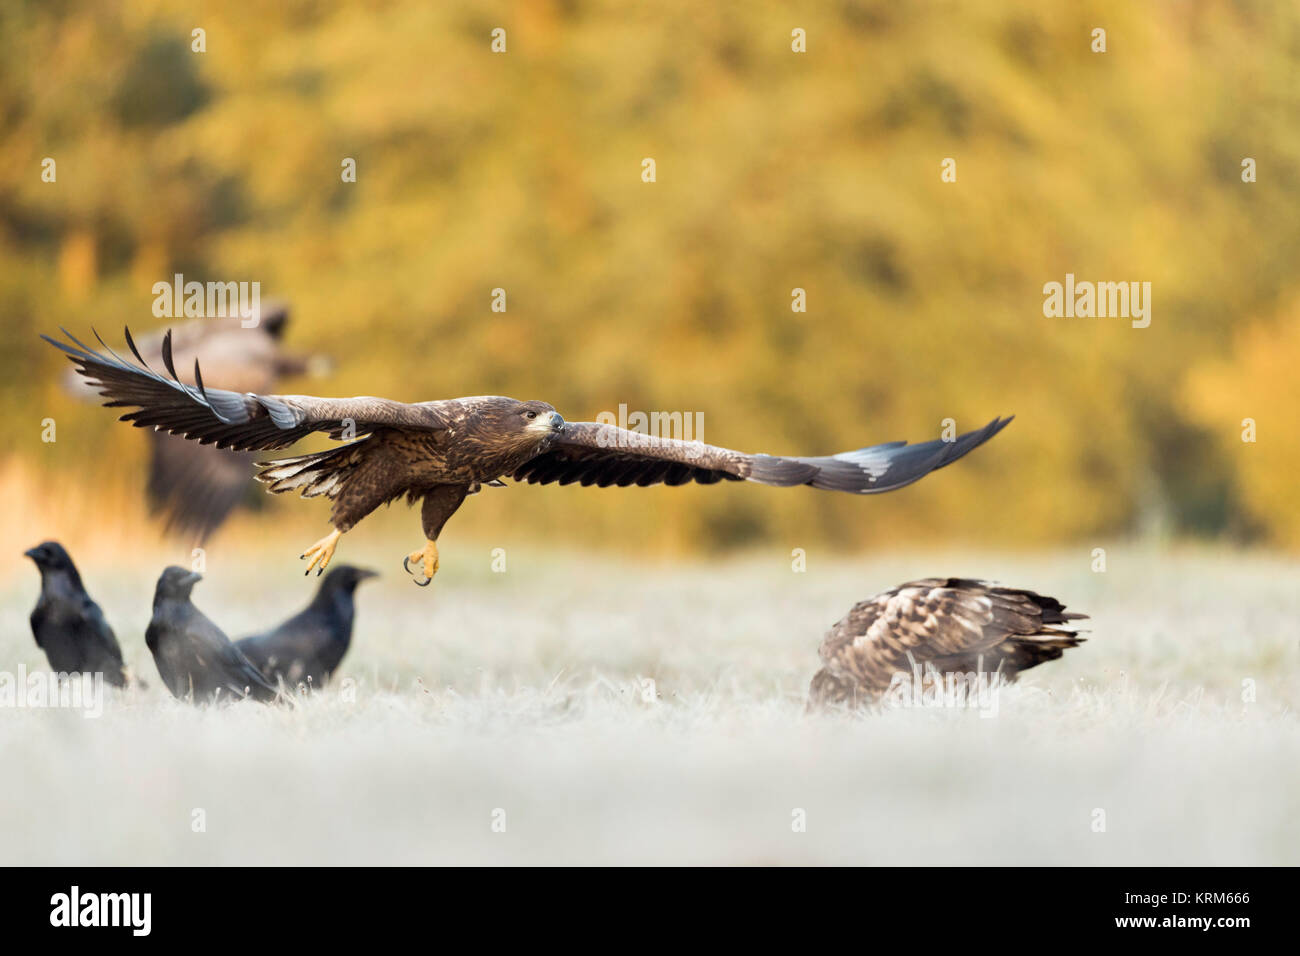 White-tailed Eagle / Sea Eagle / Aquile ( Haliaeetus albicilla ) , piccolo gruppo giovane adolescente in volo in deltaplano, arrivando, insieme con raven Foto Stock